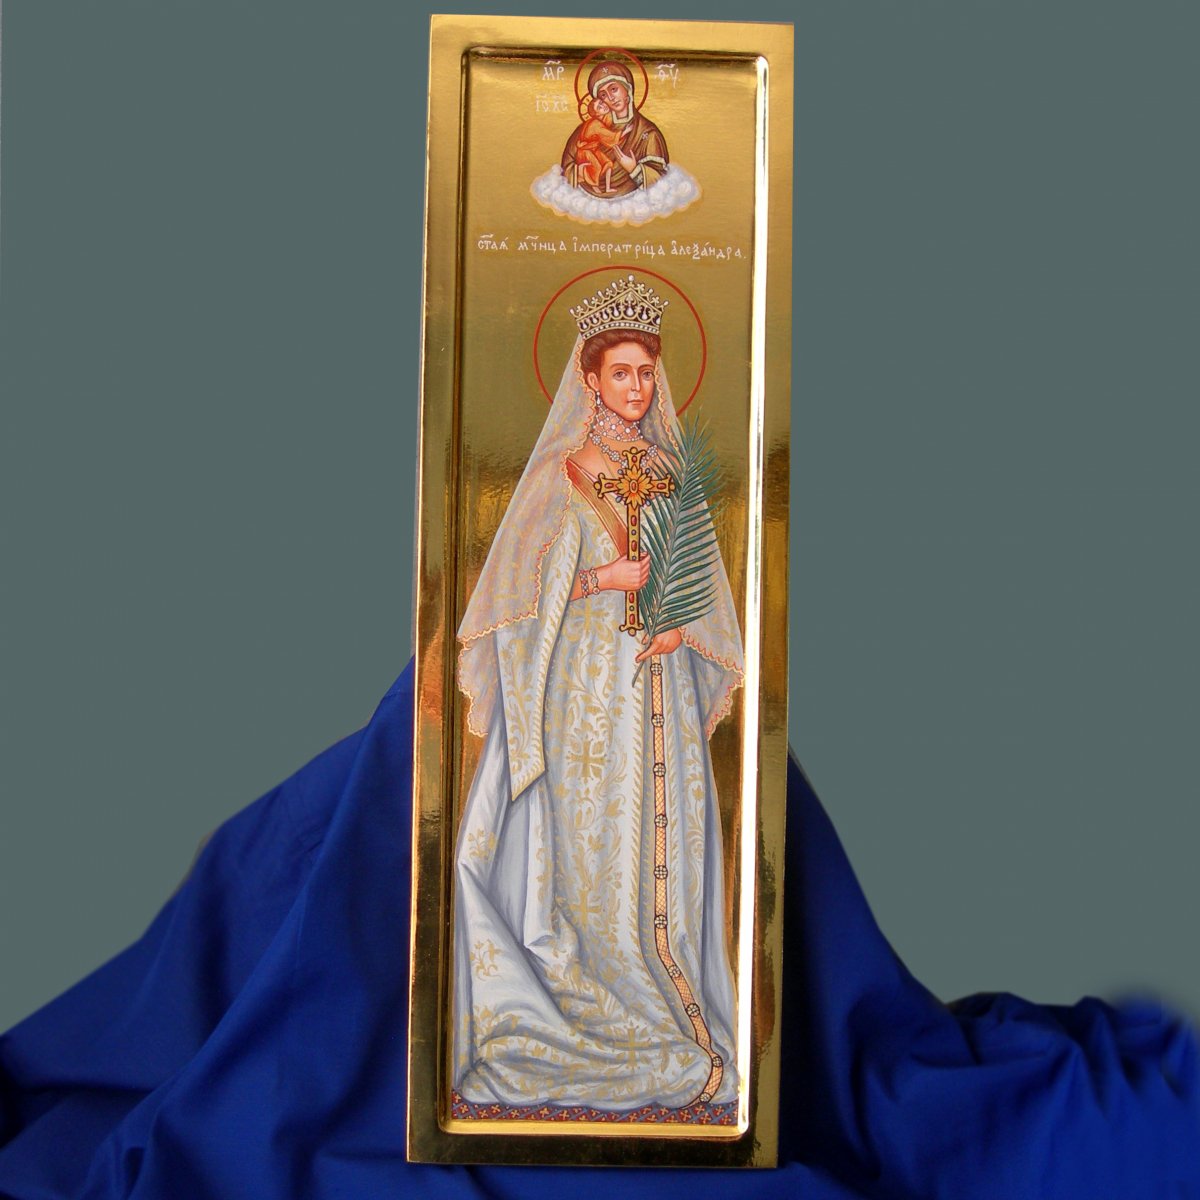 Образ святой мученицы императрицы Александры Федоровны 